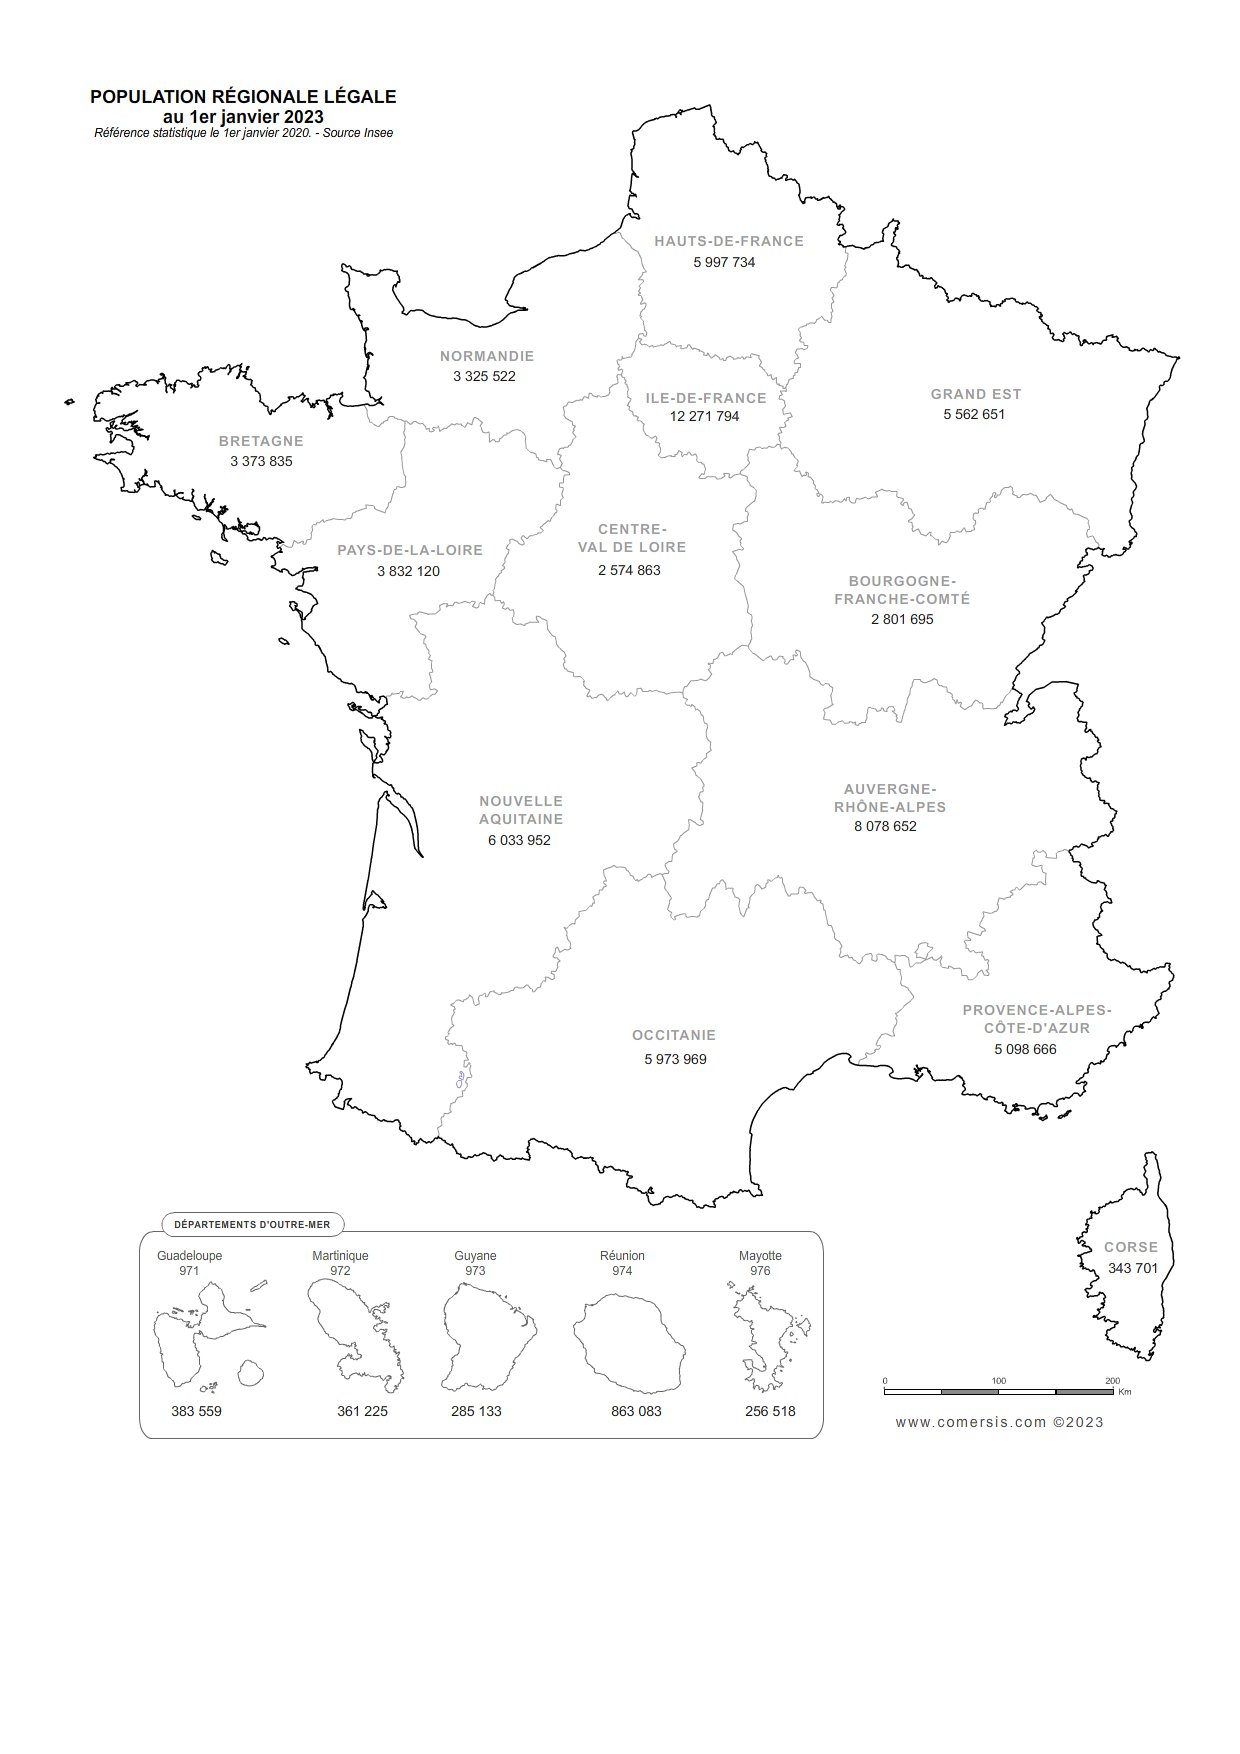 Carte de la population régionale de France 2023